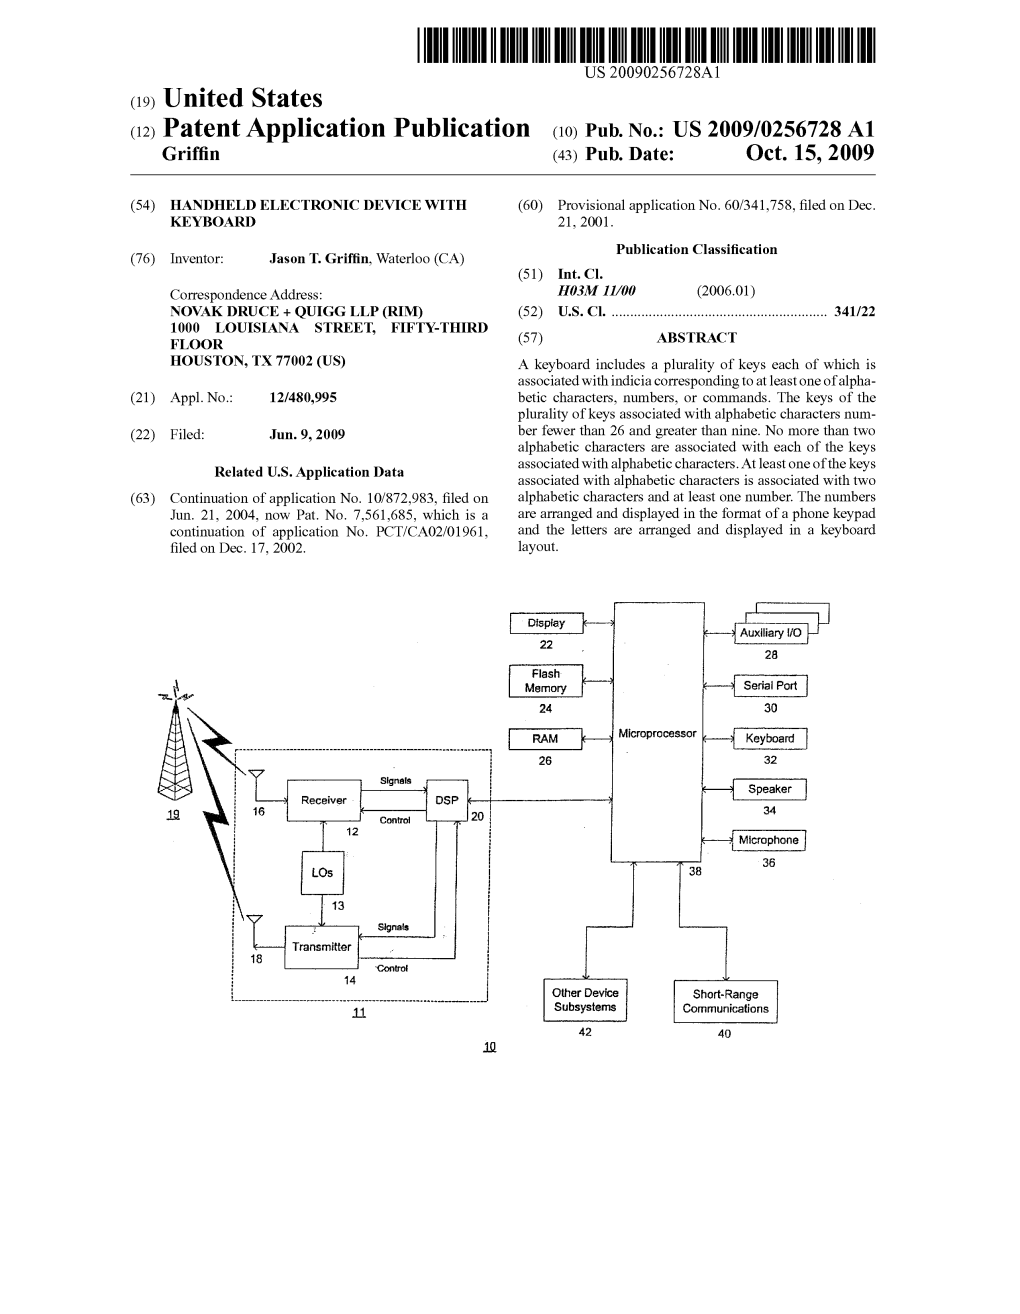 (12) Patent Application Publication (10) Pub. No.: US 2009/0256728 A1 Griffin (43) Pub